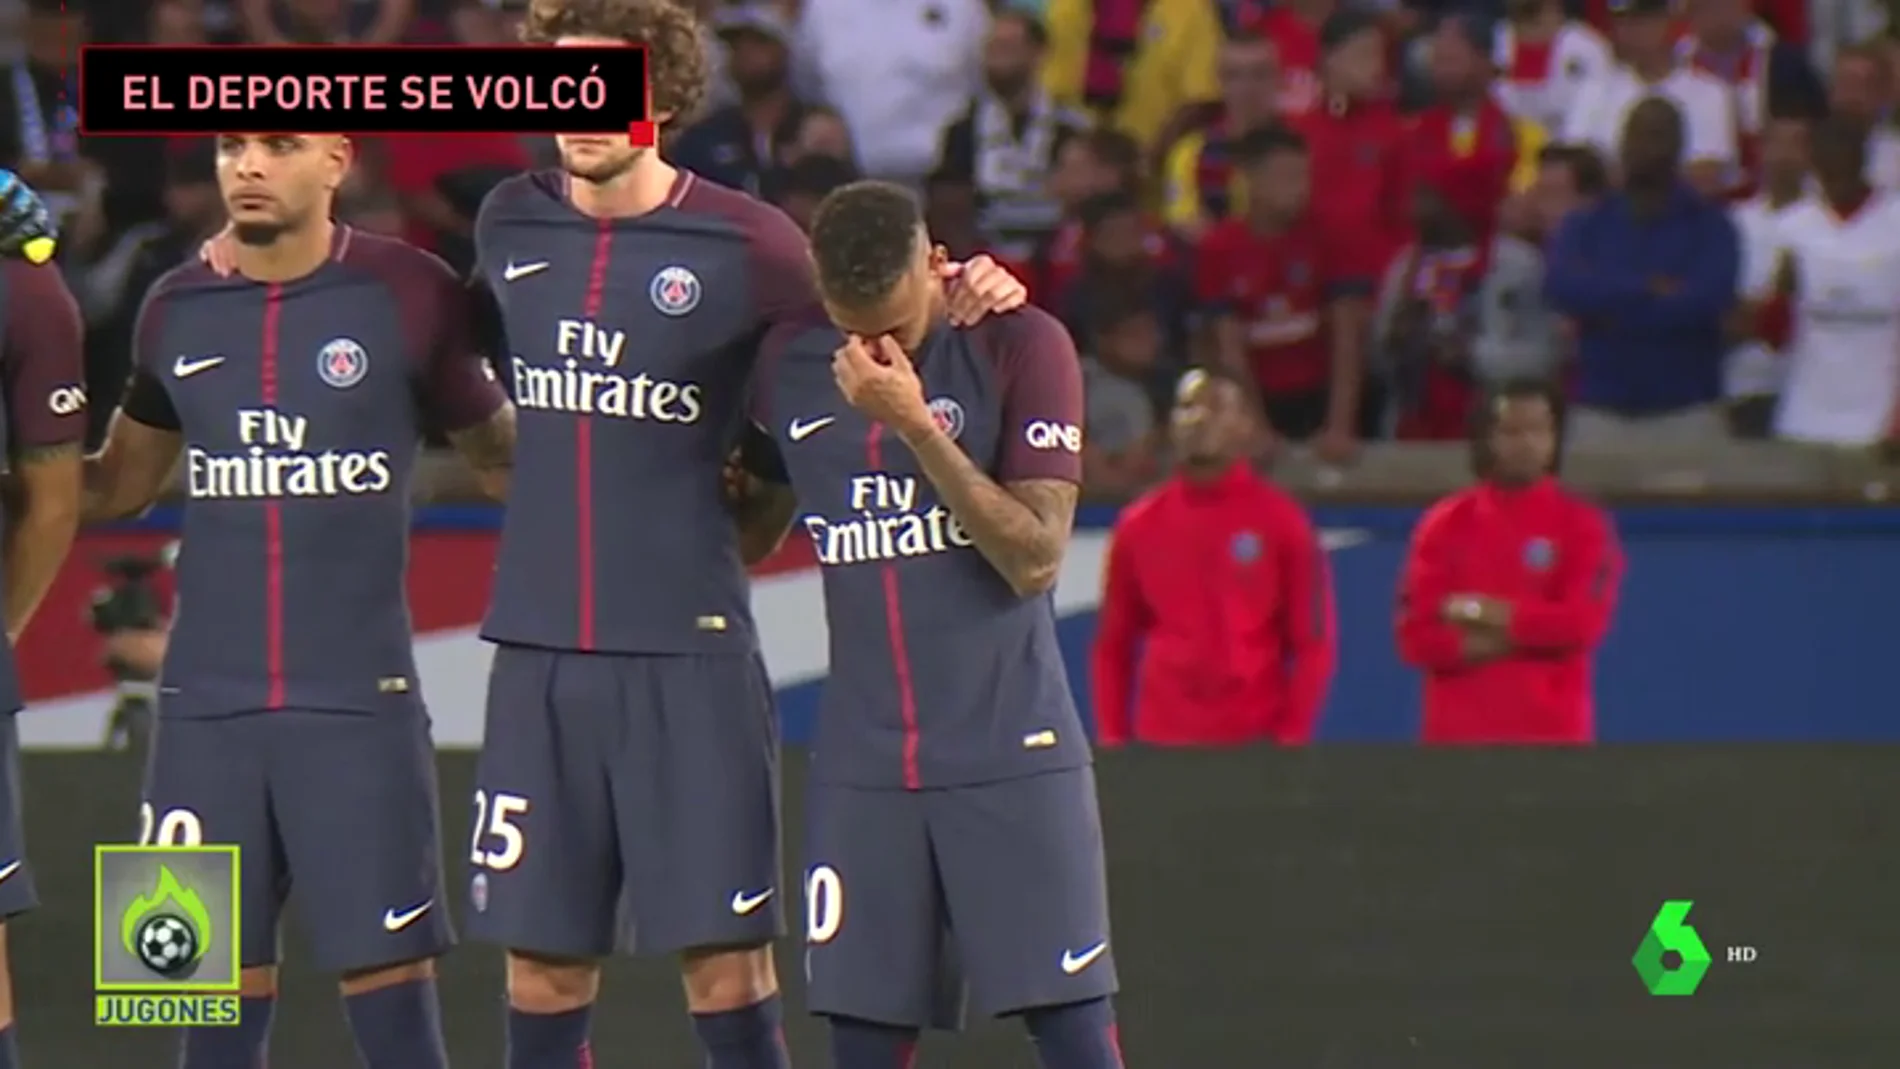 Las lágrimas de Neymar, el gol de Bartra, el crespón negro de Nadal... Así reaccionó el deporte al atentado del 17-A